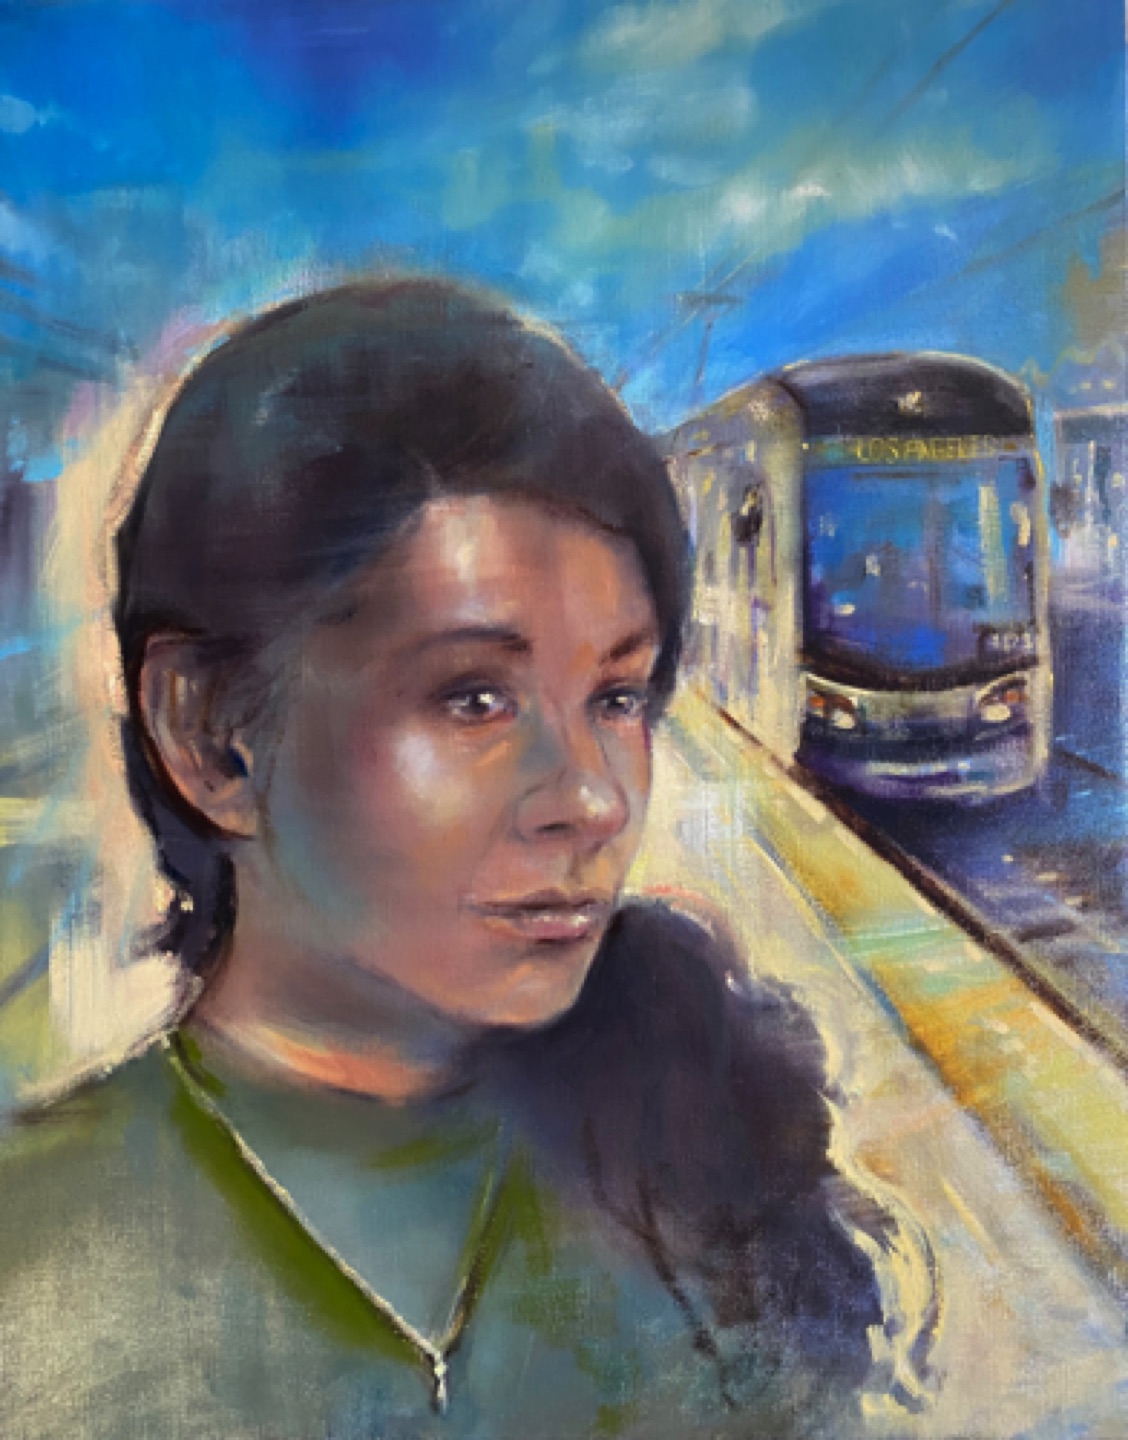 Gregg Chadwick,
Frida Cano (E Line)
37" x 24" oil on linen 2021
On exhibit in 𝙒𝙚 𝘼𝙧𝙚… 𝙋𝙤𝙧𝙩𝙧𝙖𝙞𝙩𝙨 𝙤𝙛 𝙈𝙚𝙩𝙧𝙤 𝙍𝙞𝙙𝙚𝙧𝙨 𝙗𝙮 𝙇𝙤𝙘𝙖𝙡 𝘼𝙧𝙩𝙞𝙨𝙩𝙨. Union Station, Los Angeles, California 
Metro LA Collection